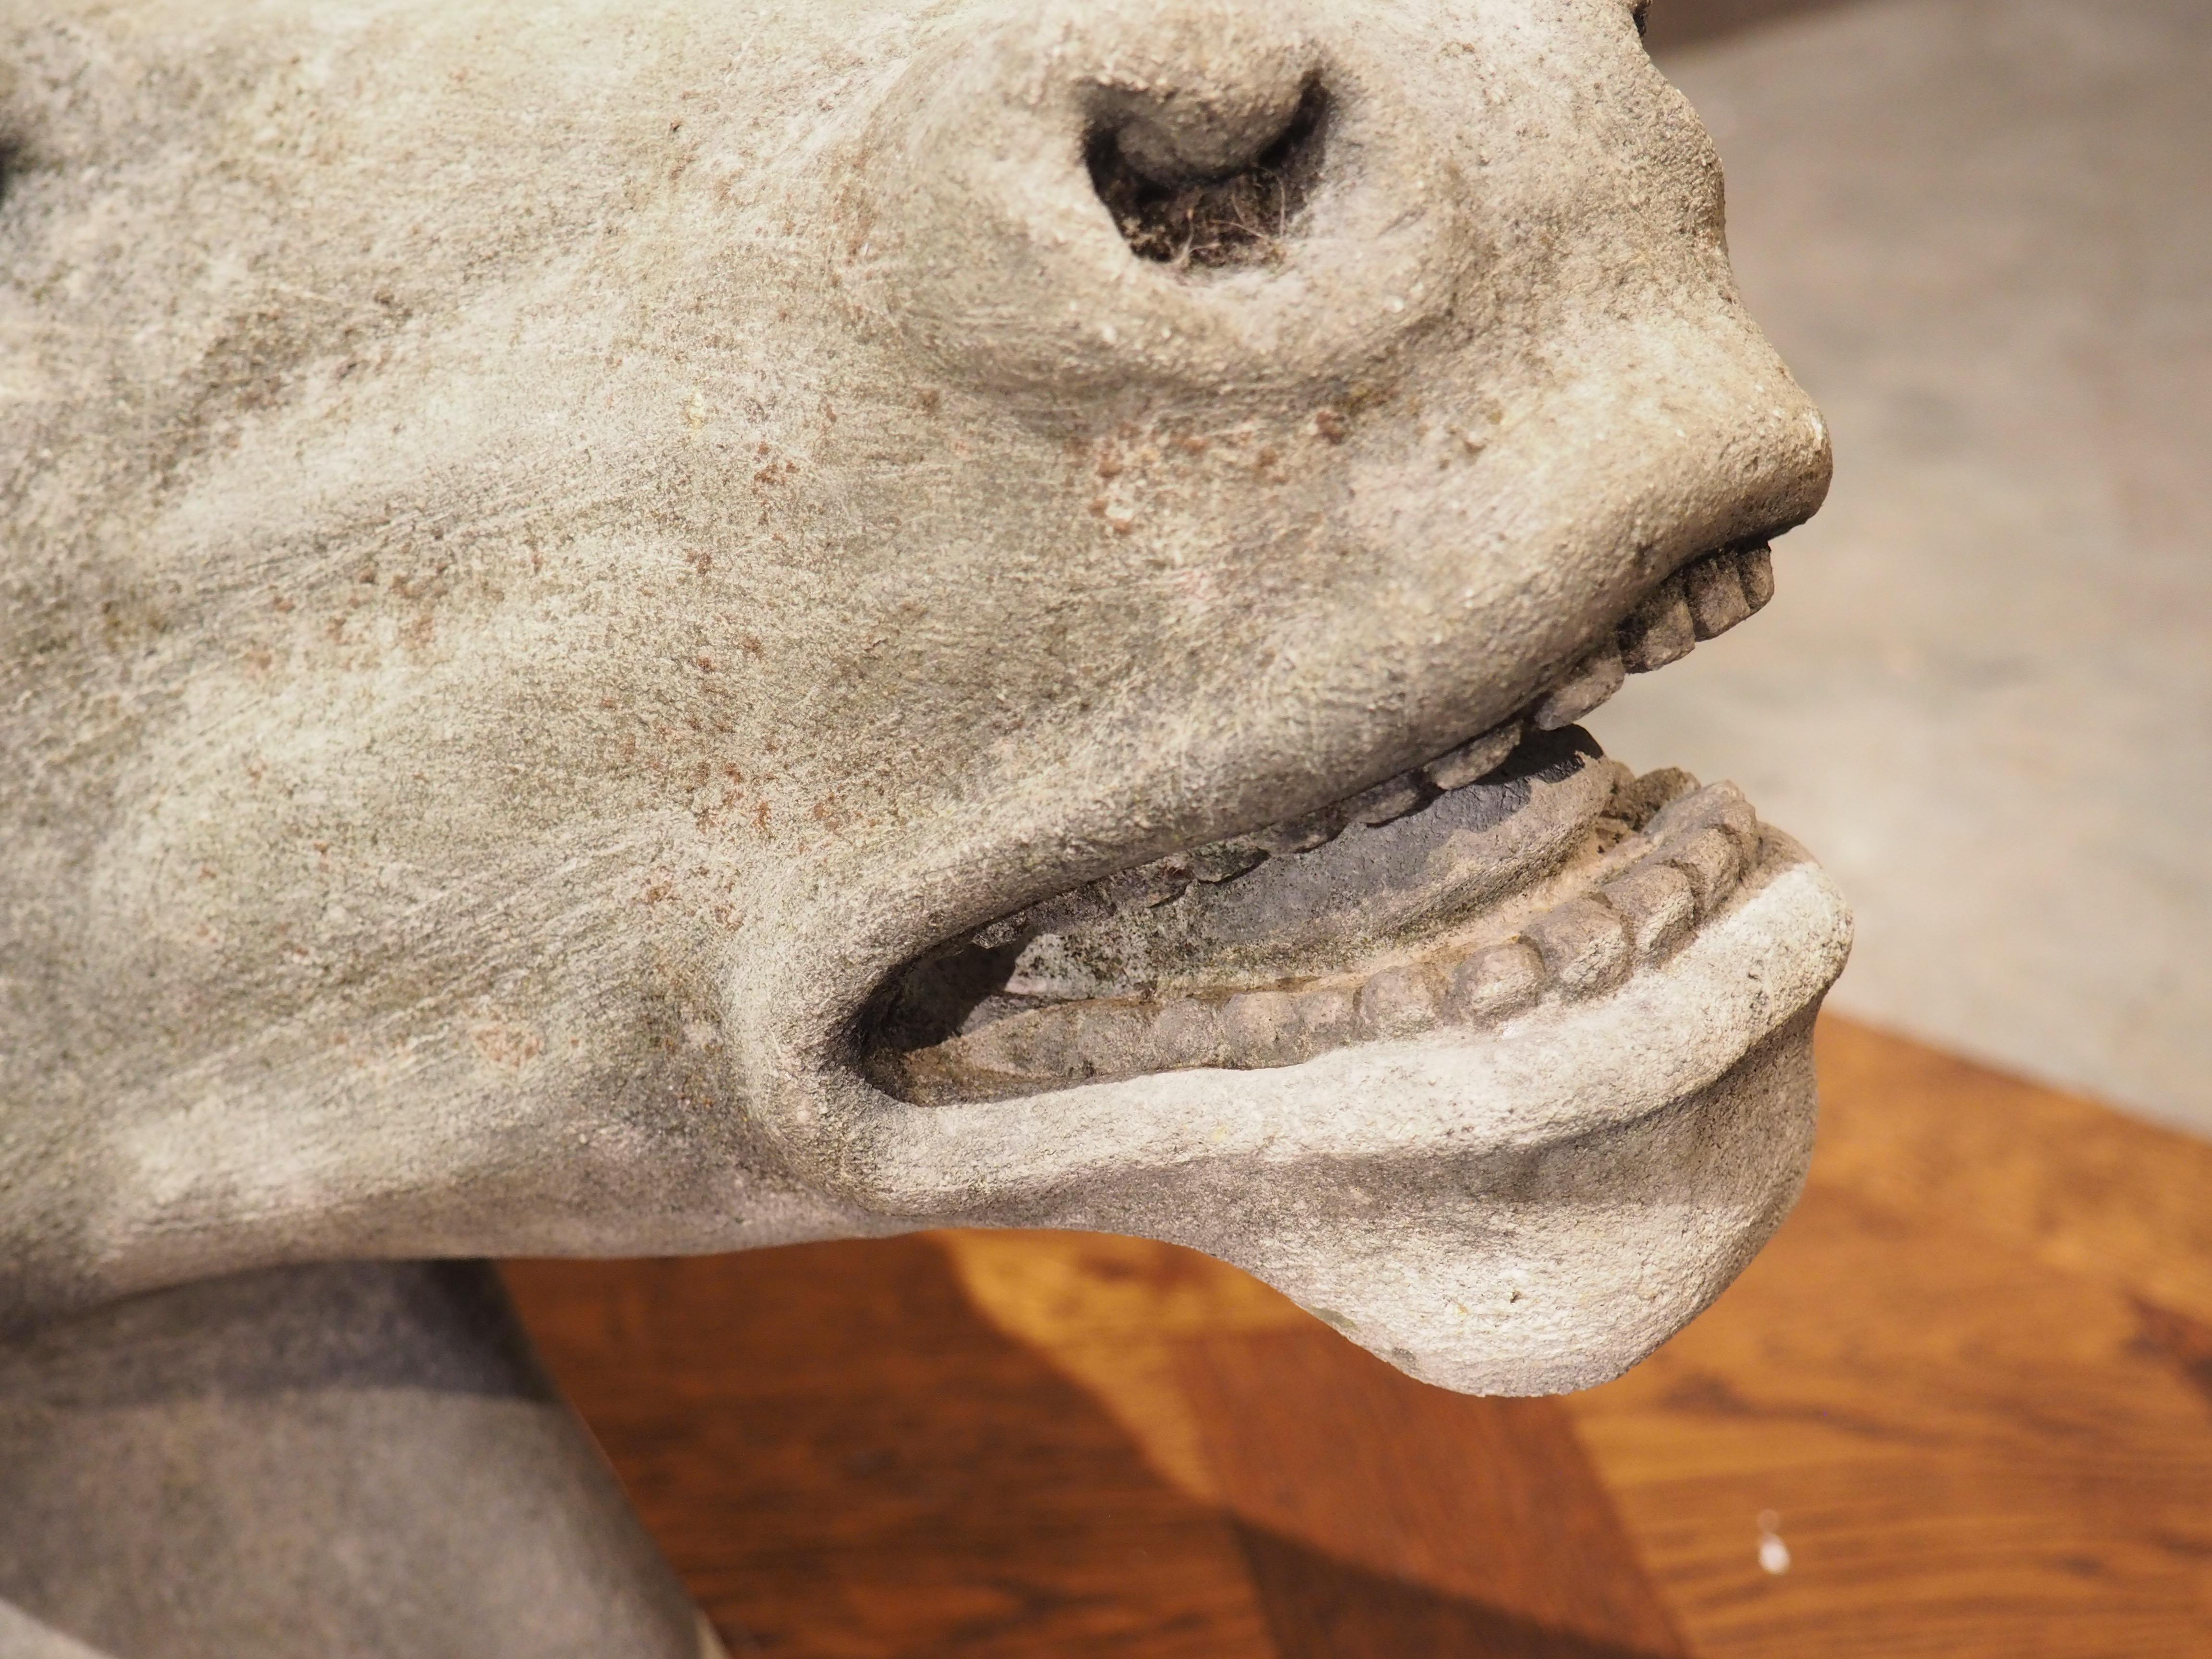 Dieser malerische Pferdekopf aus Kalkstein wurde von einem italienischen Steinmetz handgeschnitzt und hat hervorragende Proportionen. Die Kontur der Wange, die dichte Mähne und der leicht geöffnete Mund verleihen dem Kopf ein Gefühl von Realismus.